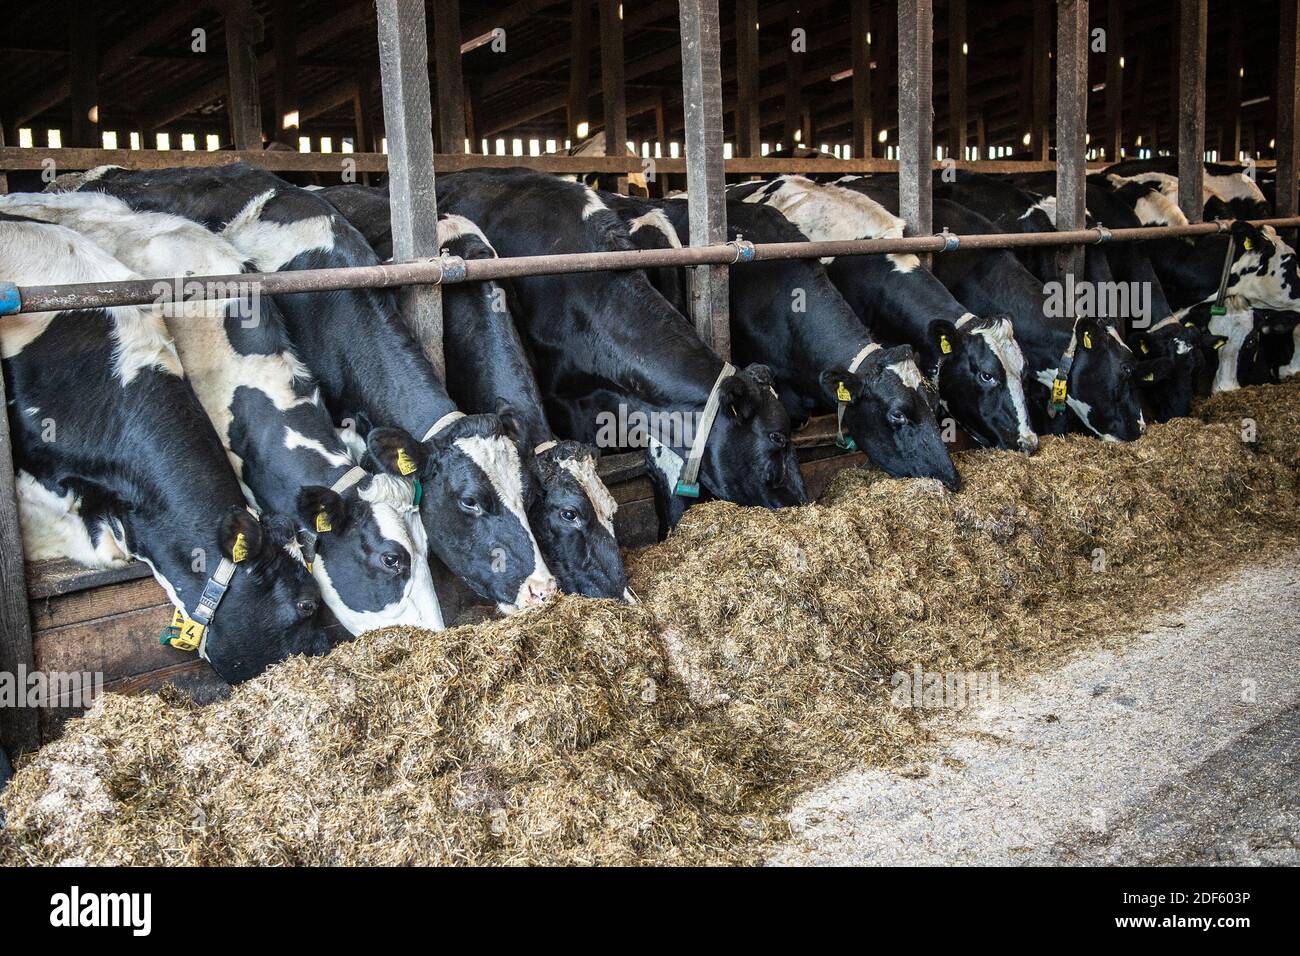 bovins laitiers mangeant de l'ensilage à l'intérieur en hiver Banque D'Images